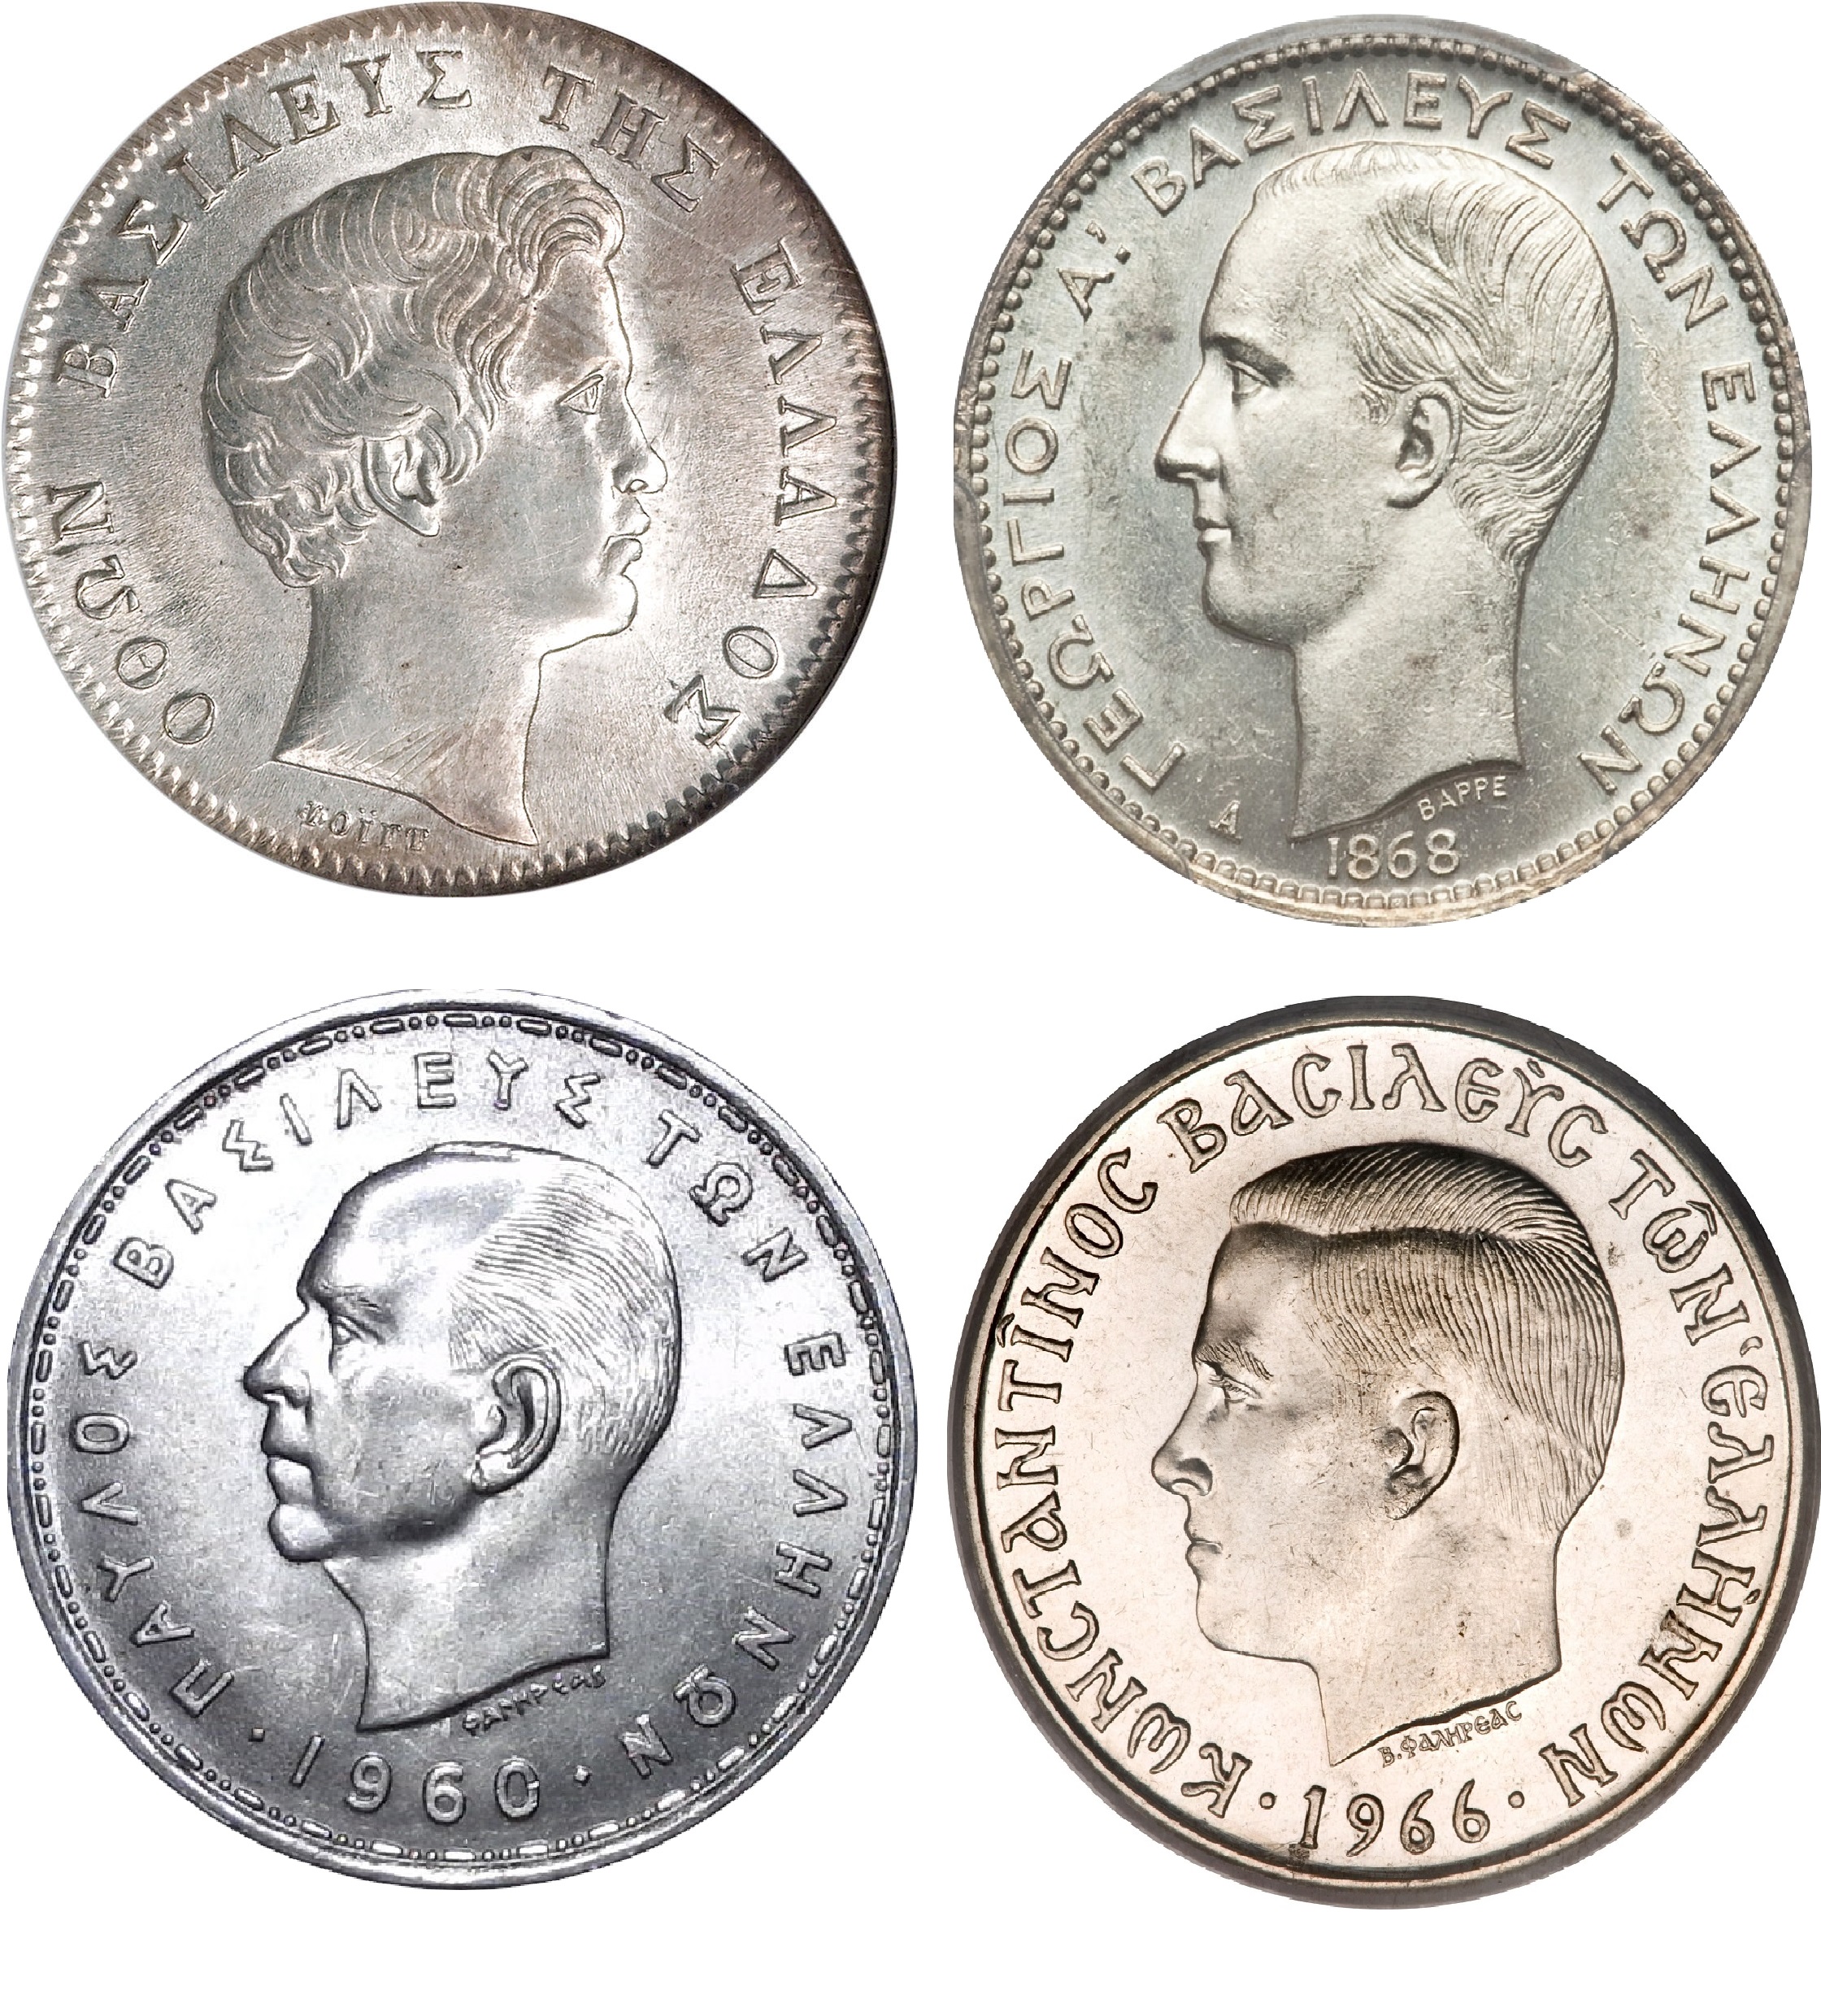 Γιατί από τους 7 βασιλείς των Ελλήνων, μόνο οι 4 απεικονίζονται στα νομίσματα. Ποιοι δεν είδαν την μορφή τους στα κέρματα